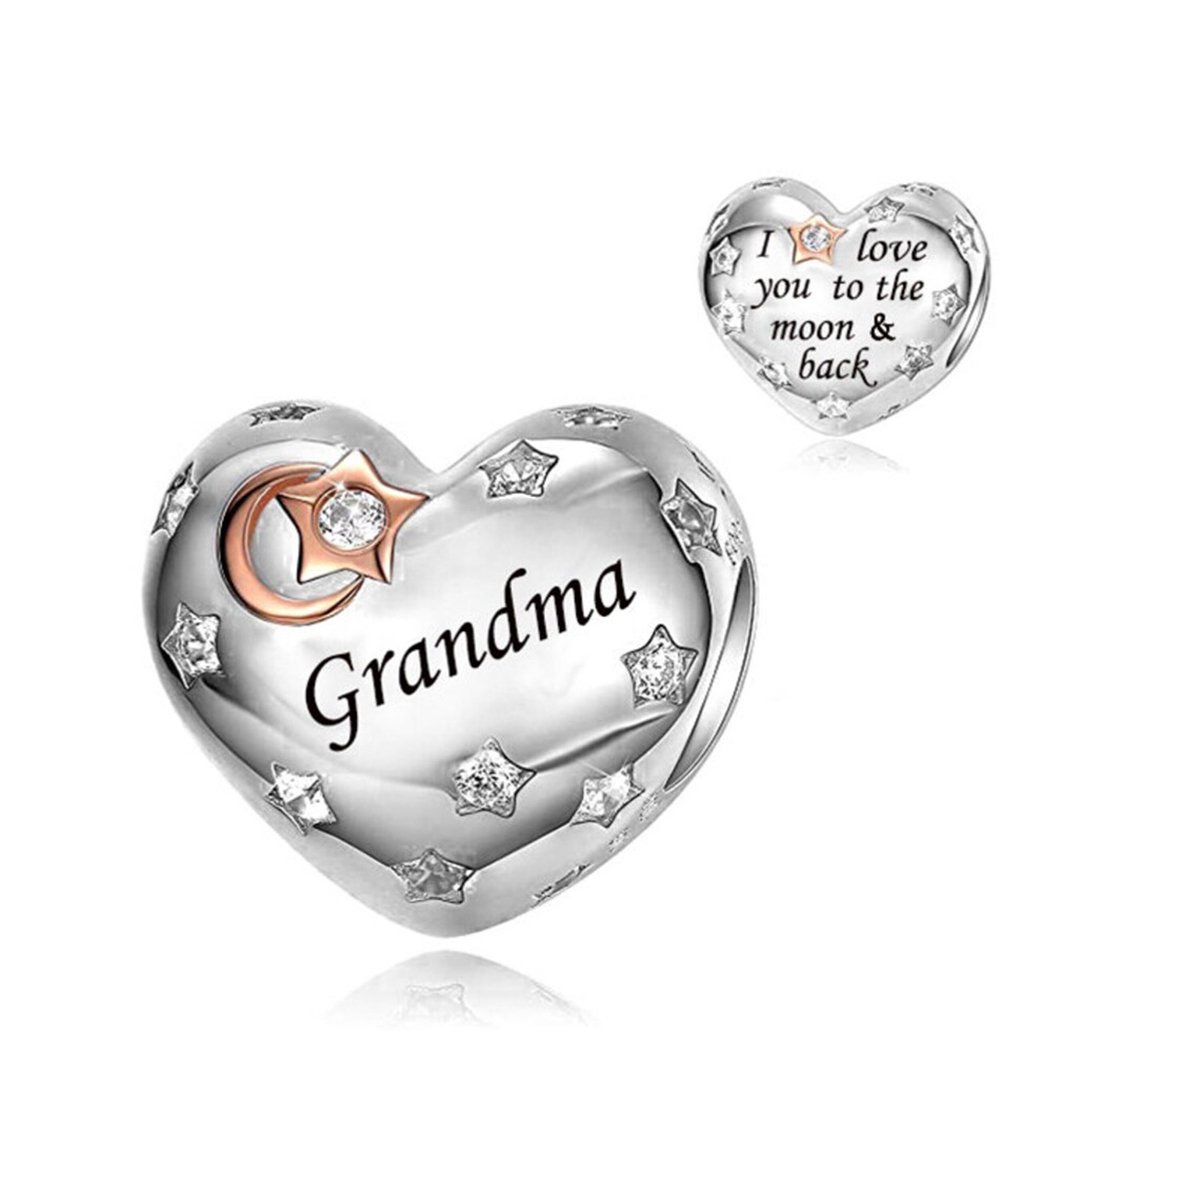 Oma Hart Bedel, Grandma Heart Charm 925 Sterling Zilver Bedel Voor Armband - Keen Jewel